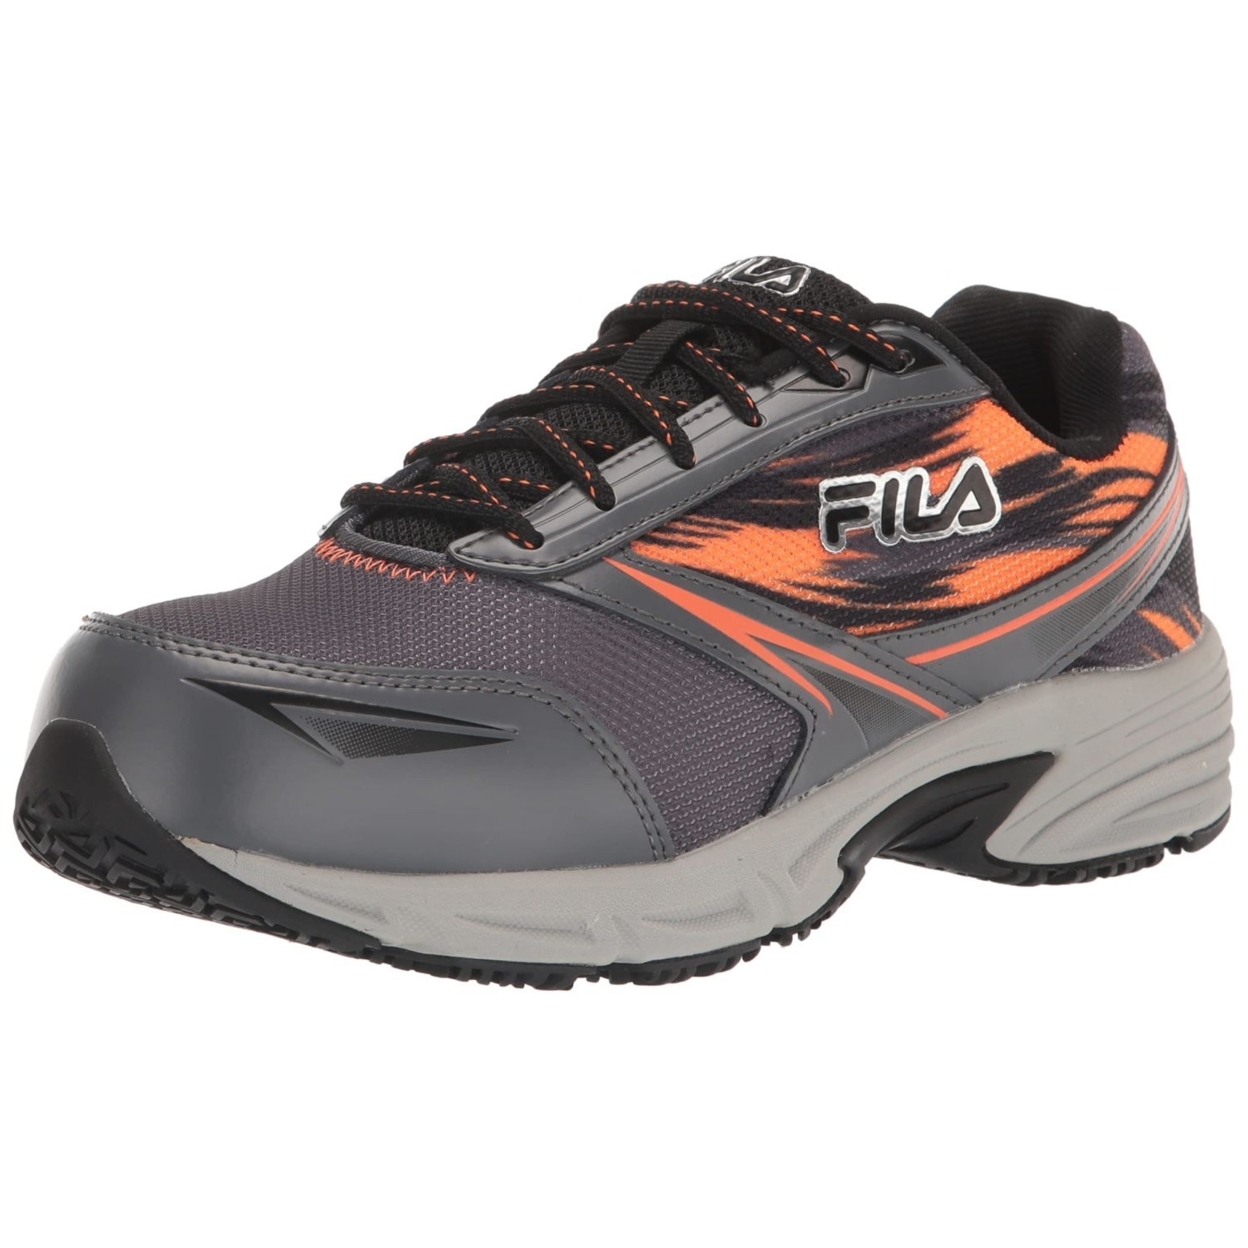 Fila Menâs Memory Meiera 2 Slip Resistant And Composite Toe Work Shoe CSRK/BLK/VORN - CSRK/BLK/VORN, 8